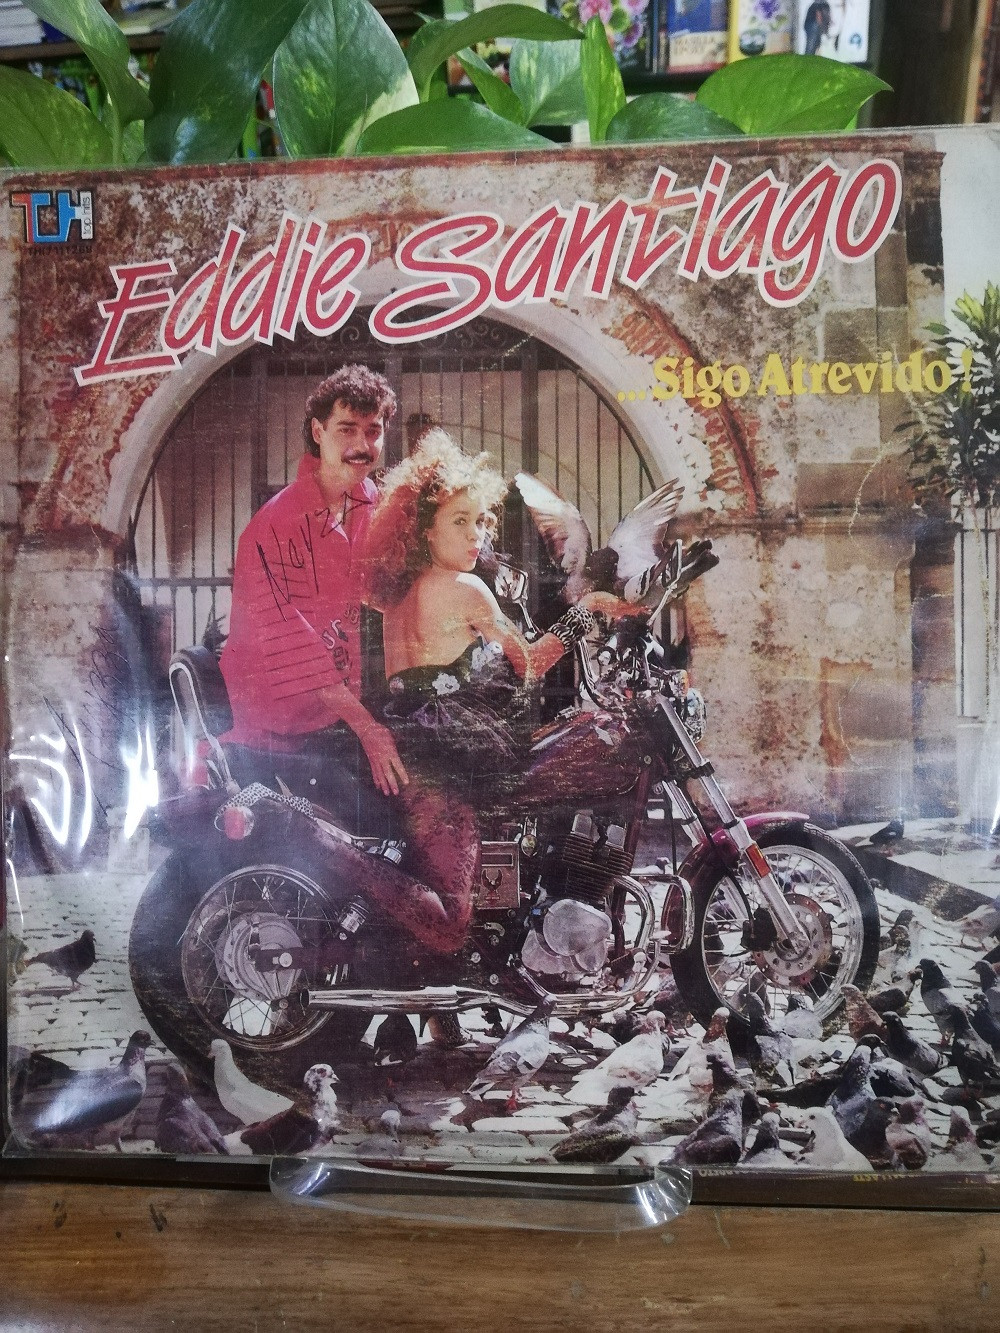 Imagen LP EDDIE SANTIAGO - SIGO ATREVIDO 1